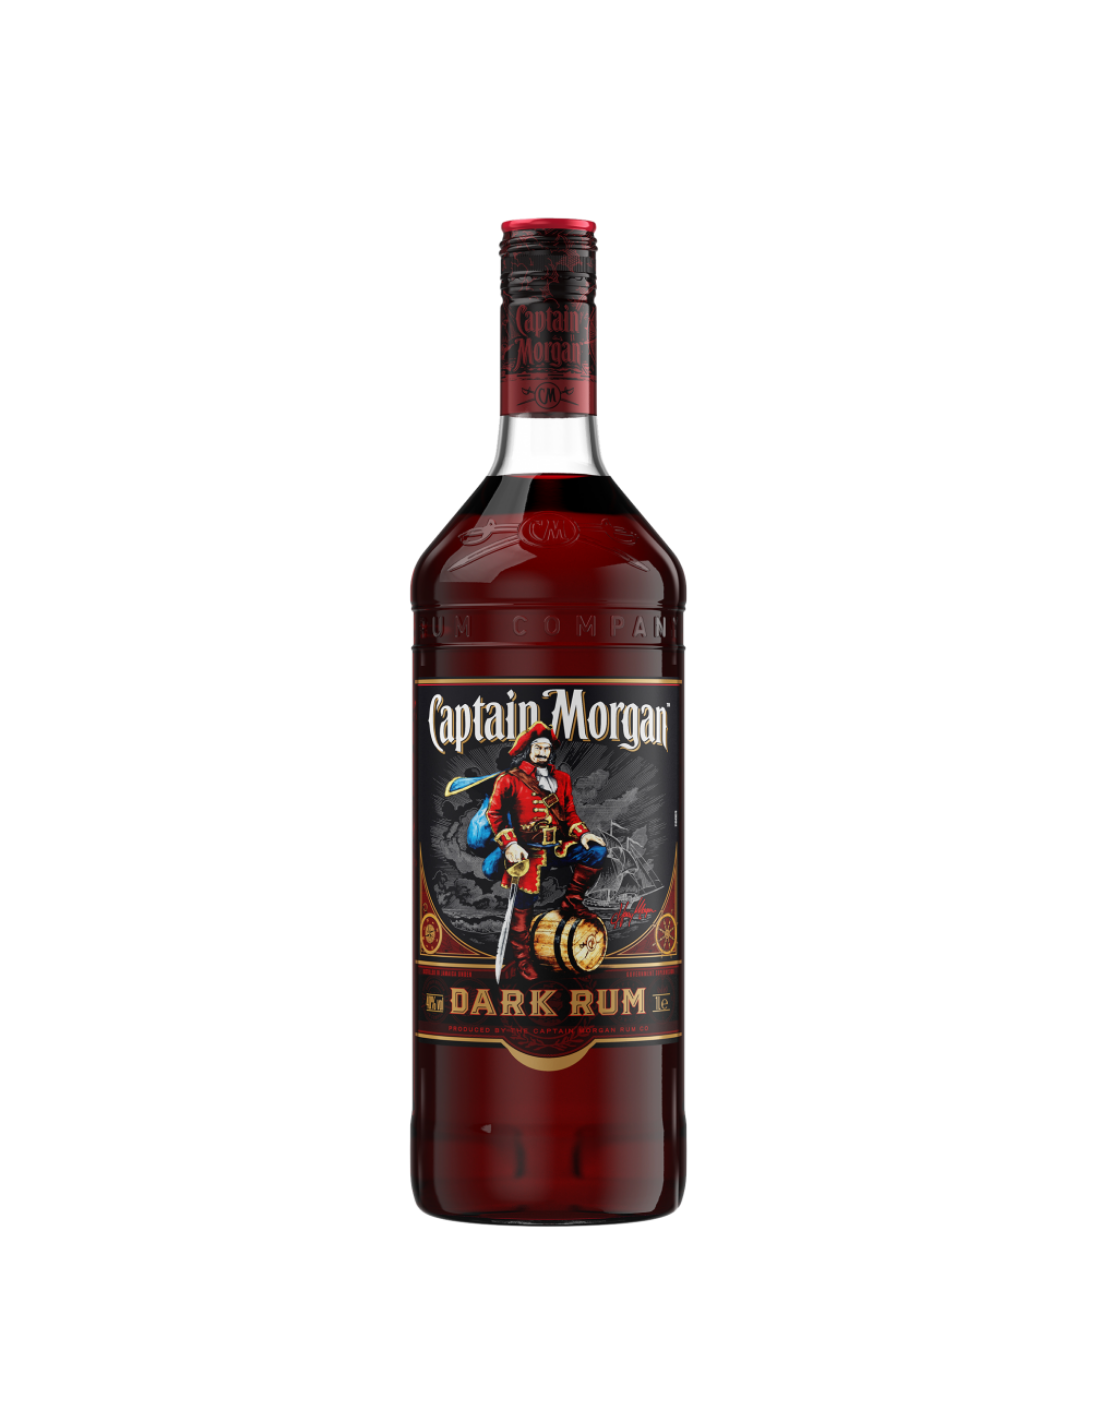 Rom negru Captain Morgan Dark Rum, 40% alc., 1L, Jamaica